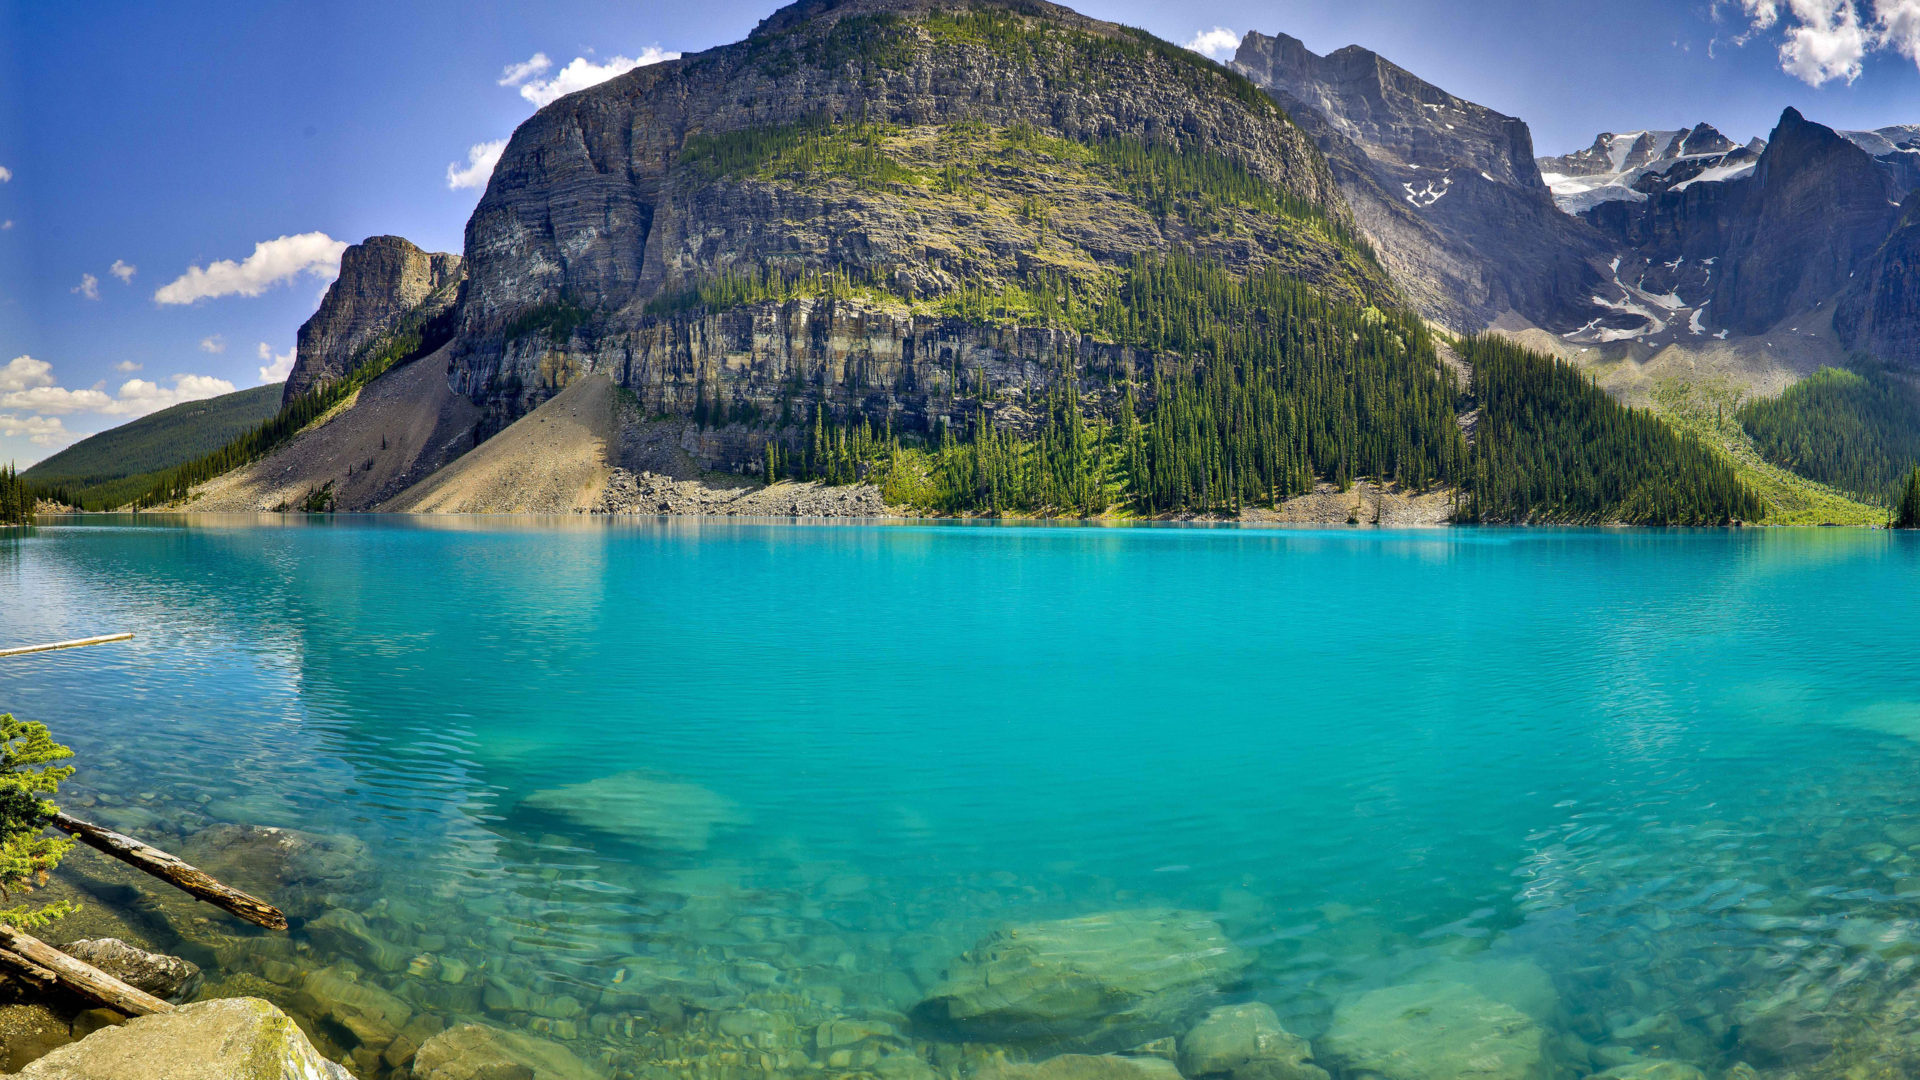 Landschaftliche Hintergrundbilder vom Moraine Lake, 1920x1080 Full HD Desktop